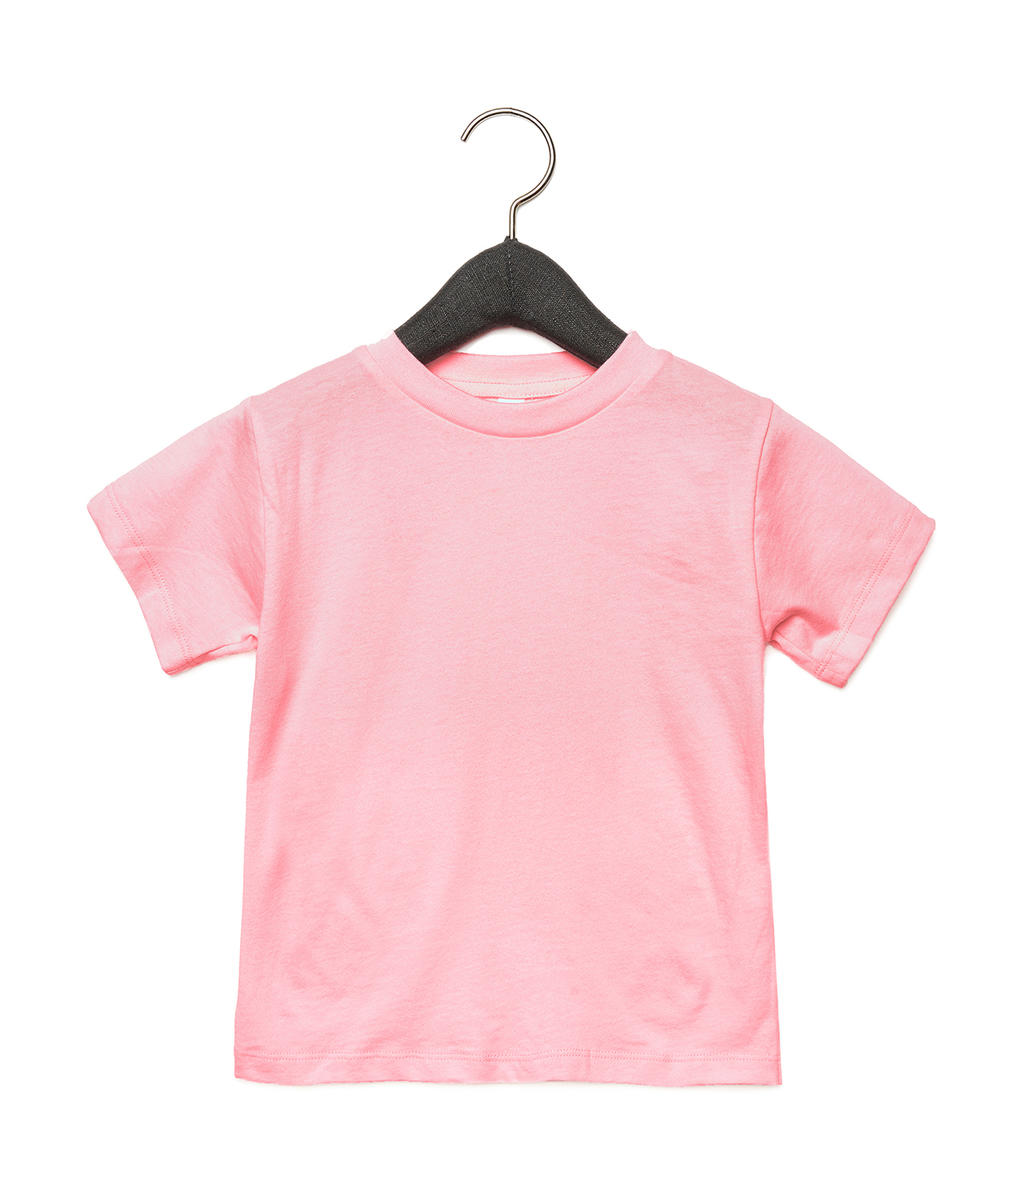 Detské tričko s krátkymi rukávmi - pink